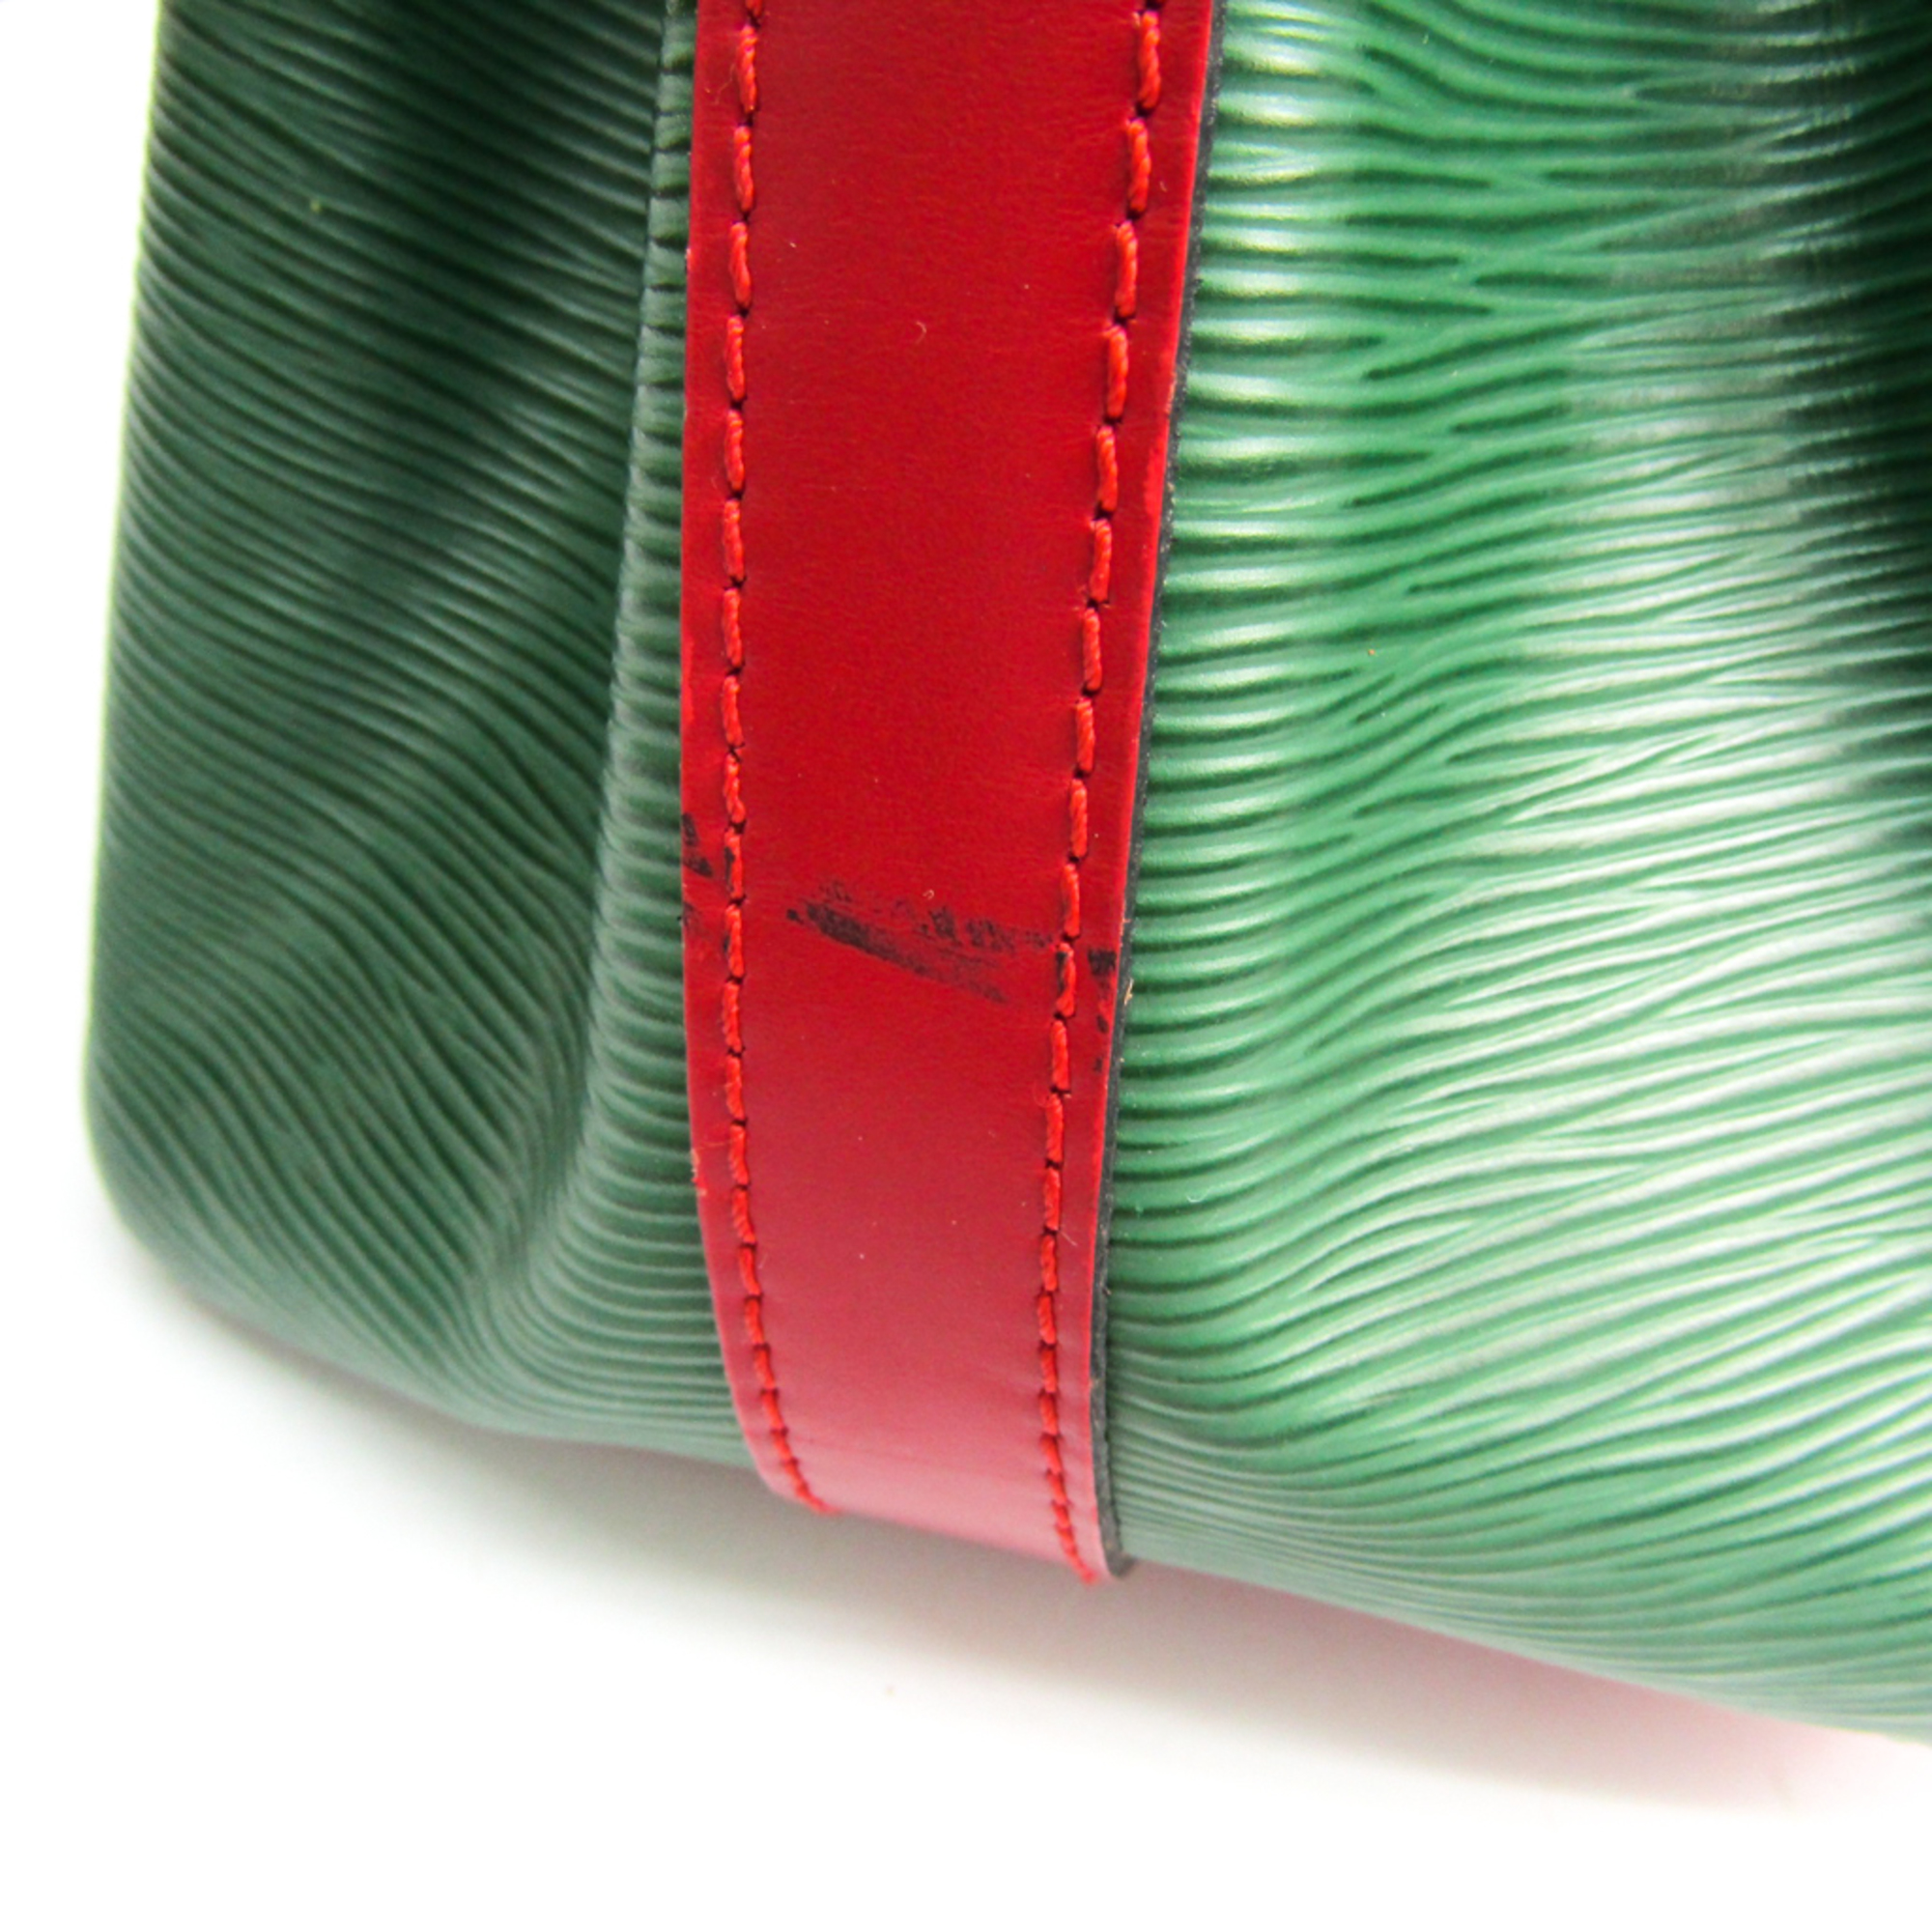 Louis Vuitton Epi Petit Noe M44147 Shoulder Bag Bicolor